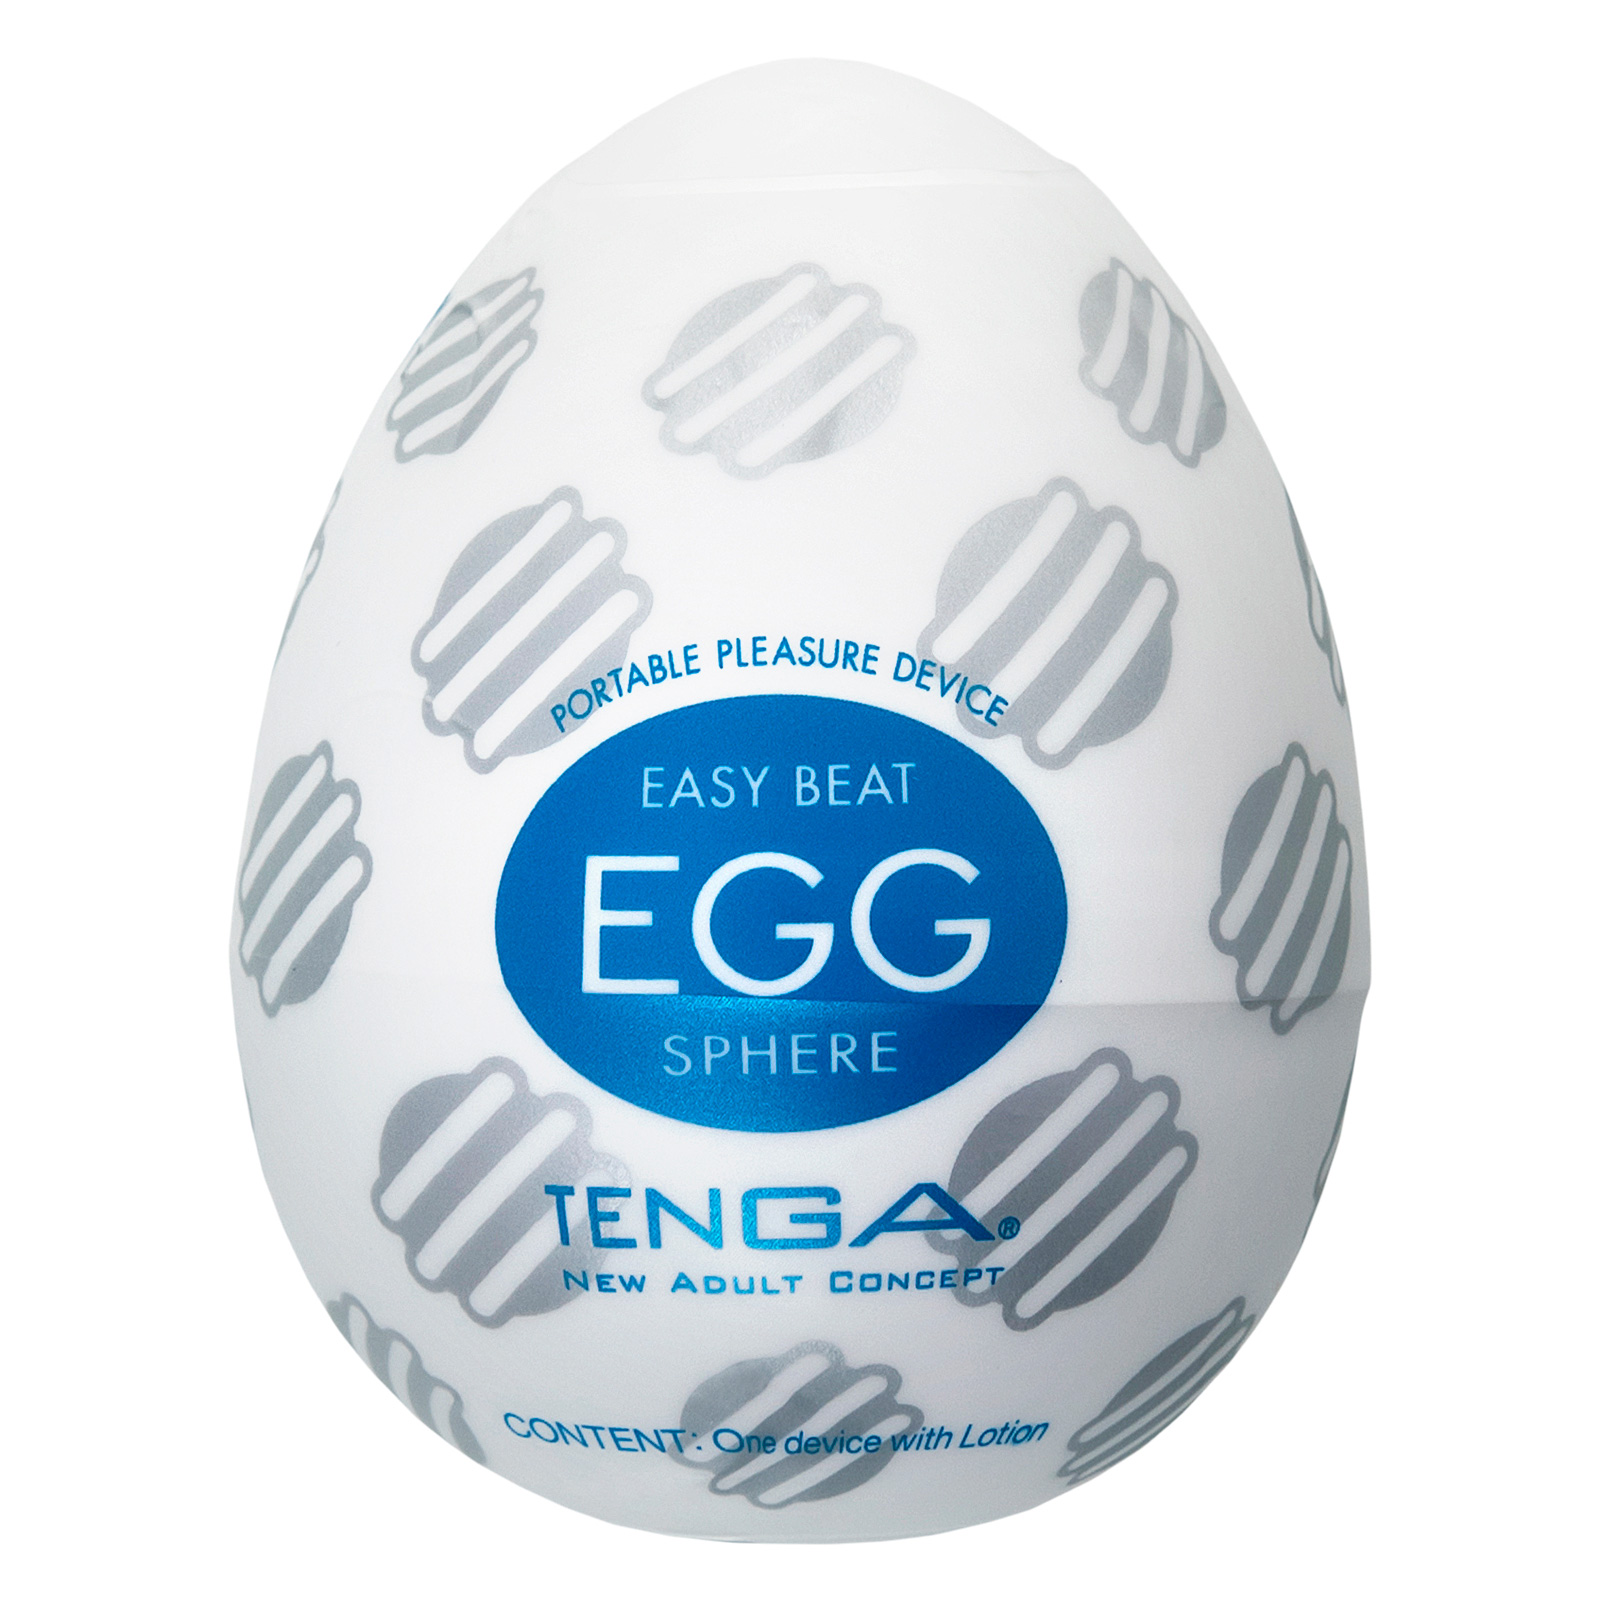 Мастурбатор tenga. Мастурбатор tenga Egg-013. Tenga easy-Beat Egg. Мастурбатор-яйцо Egg Sphere. Tenga мастурбатор-яйцо variety Pack Egg (Egg-vp6.